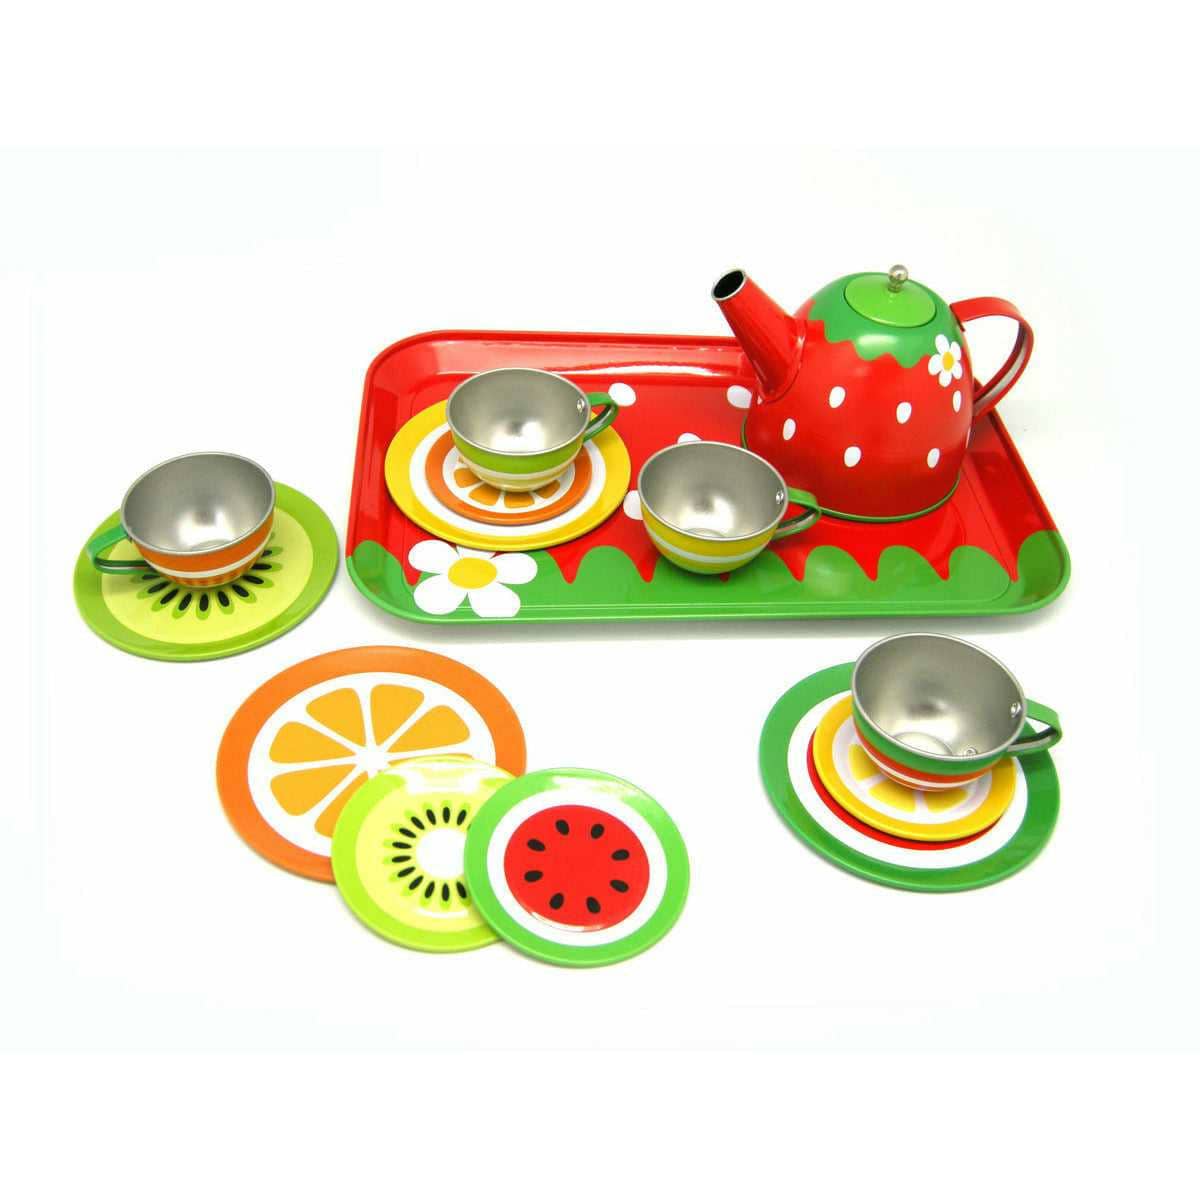 Fruit Tin Tea Set - Sensory Circle